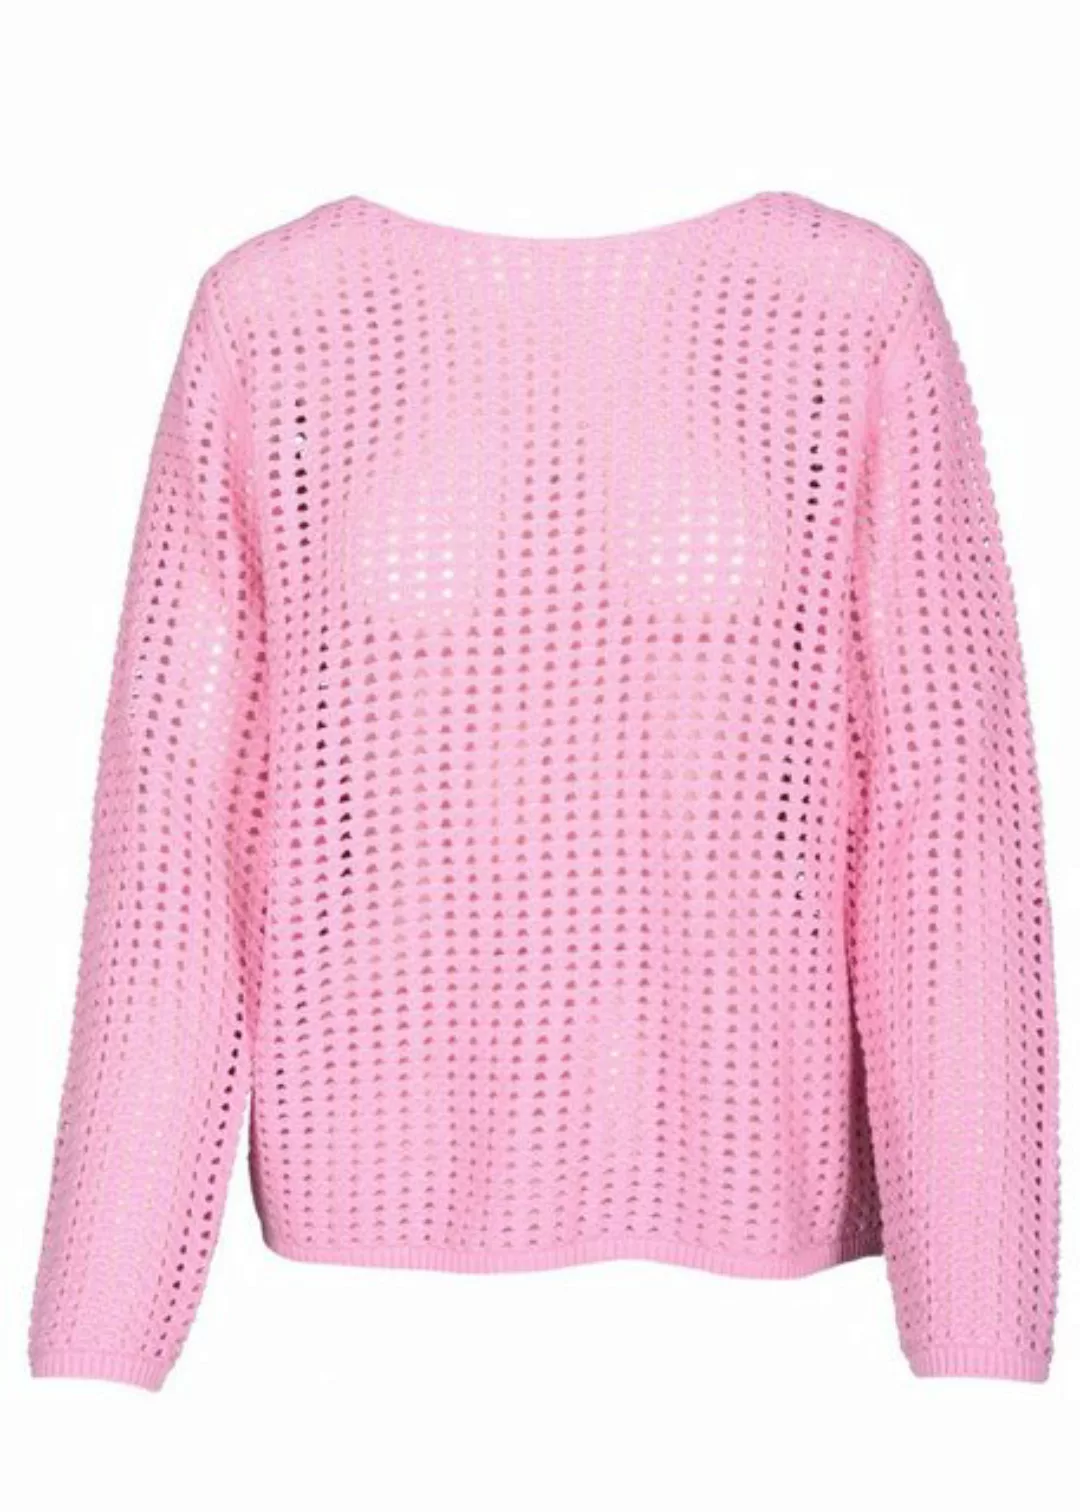 THE FASHION PEOPLE Kurzarmpullover Openwork sweater knitted günstig online kaufen